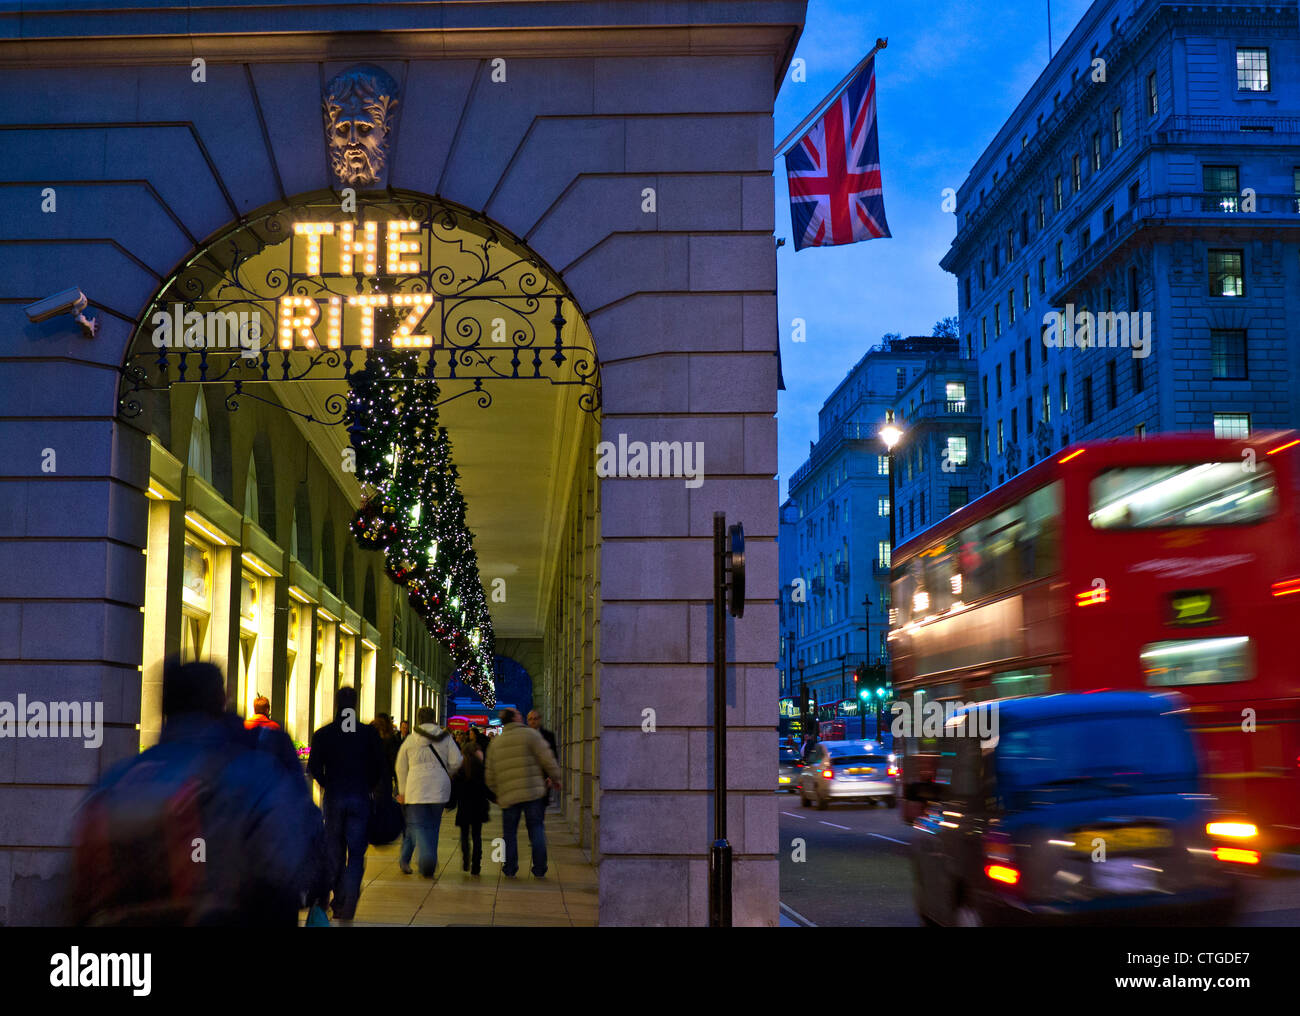 Das Ritz Hotel zu Weihnachten mit Union Jack Flag Shopper und vorbei an Red Buse und schwarzen Taxi Piccadilly London UK Stockfoto